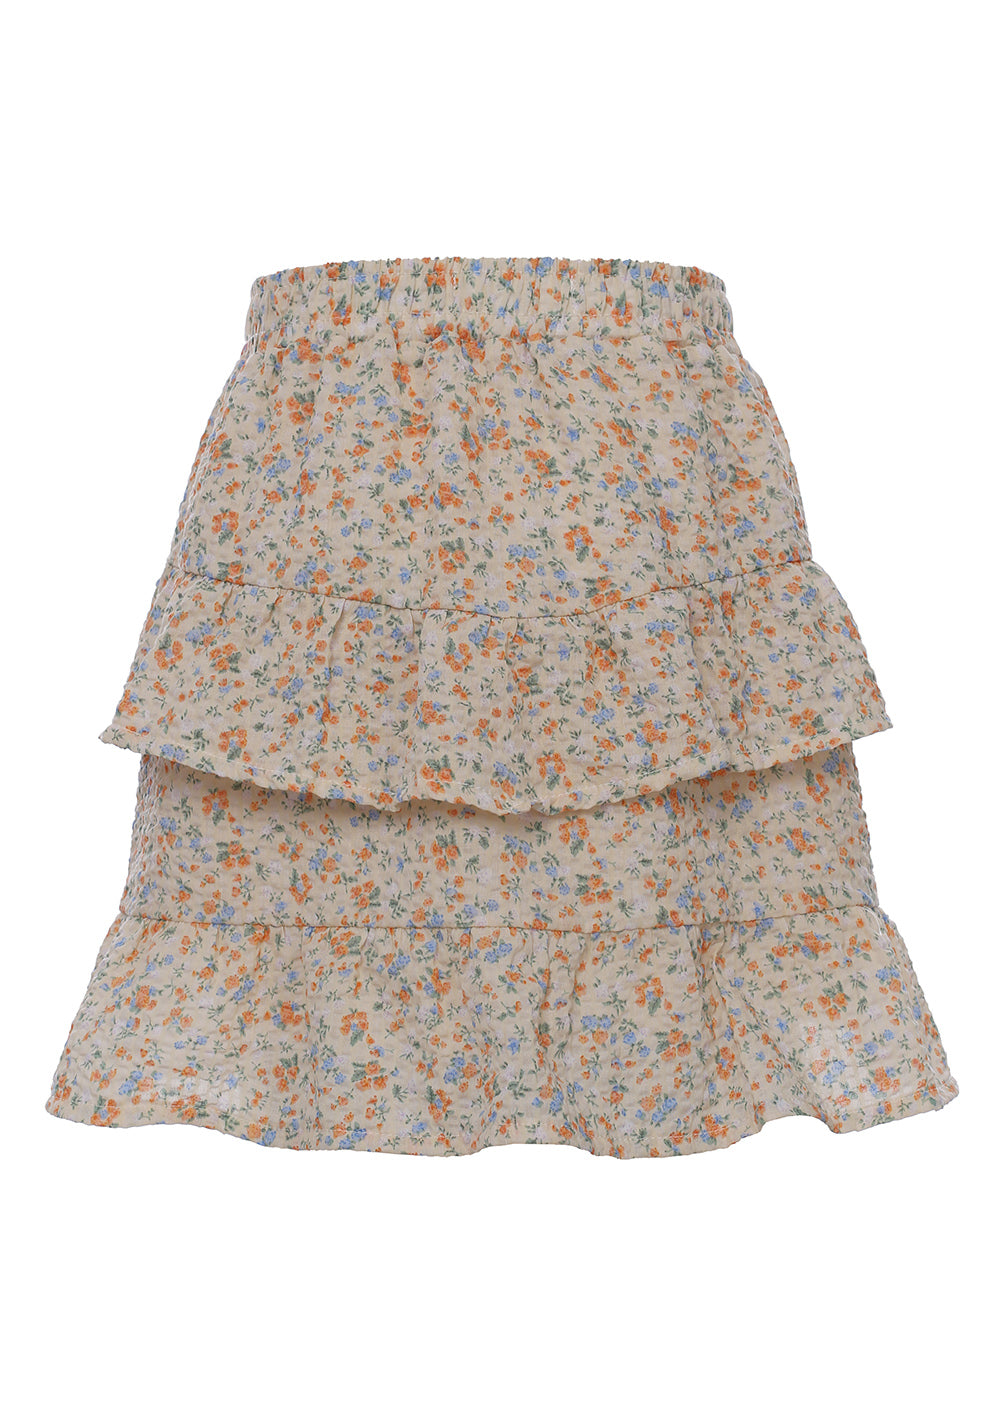 Meisjes Fancy Woven Skirt Mini Flower van LOOXS Little in de kleur mini flower in maat 128.